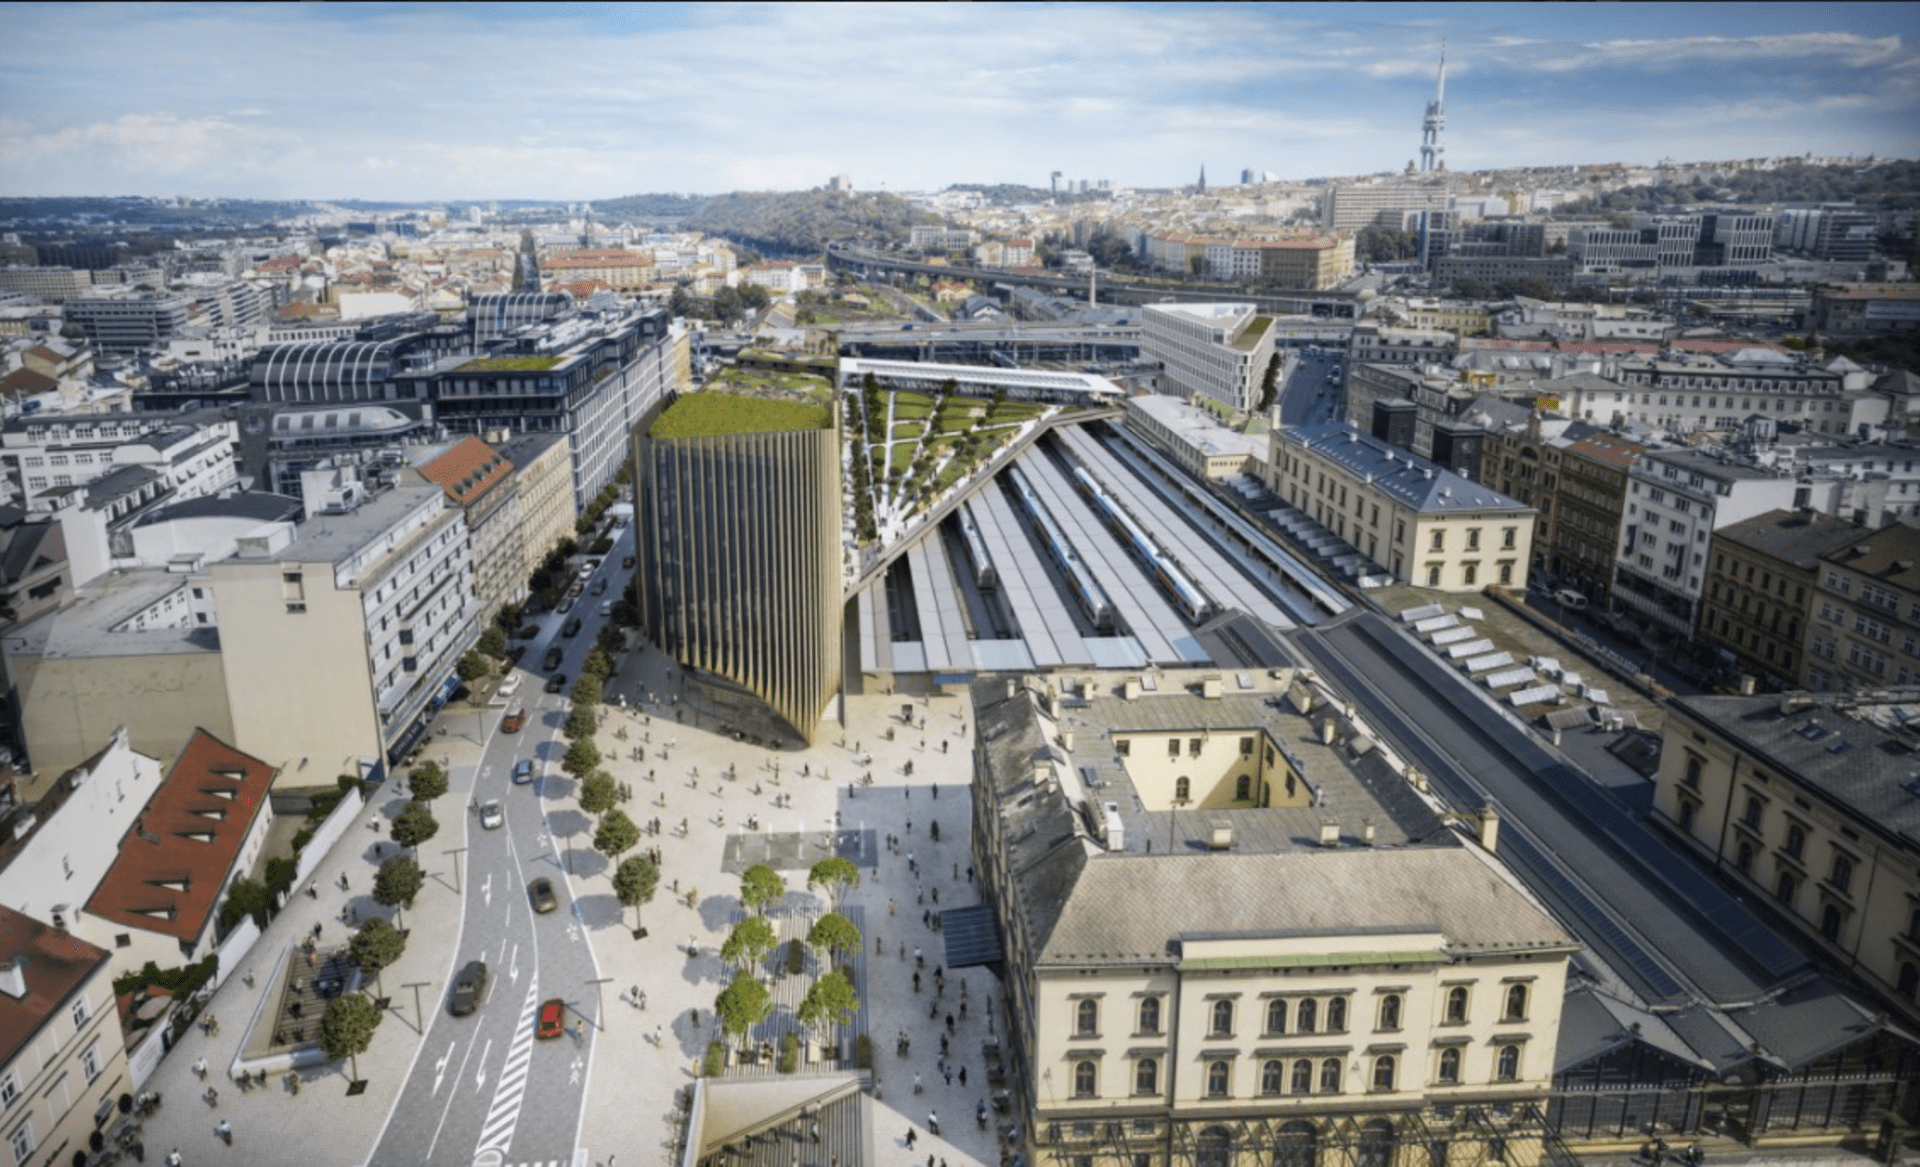 Projekt revitalizace pozemků v okolí Masarykova nádraží vychází z dílny architektonického ateliéru Zaha Hadid Architects.